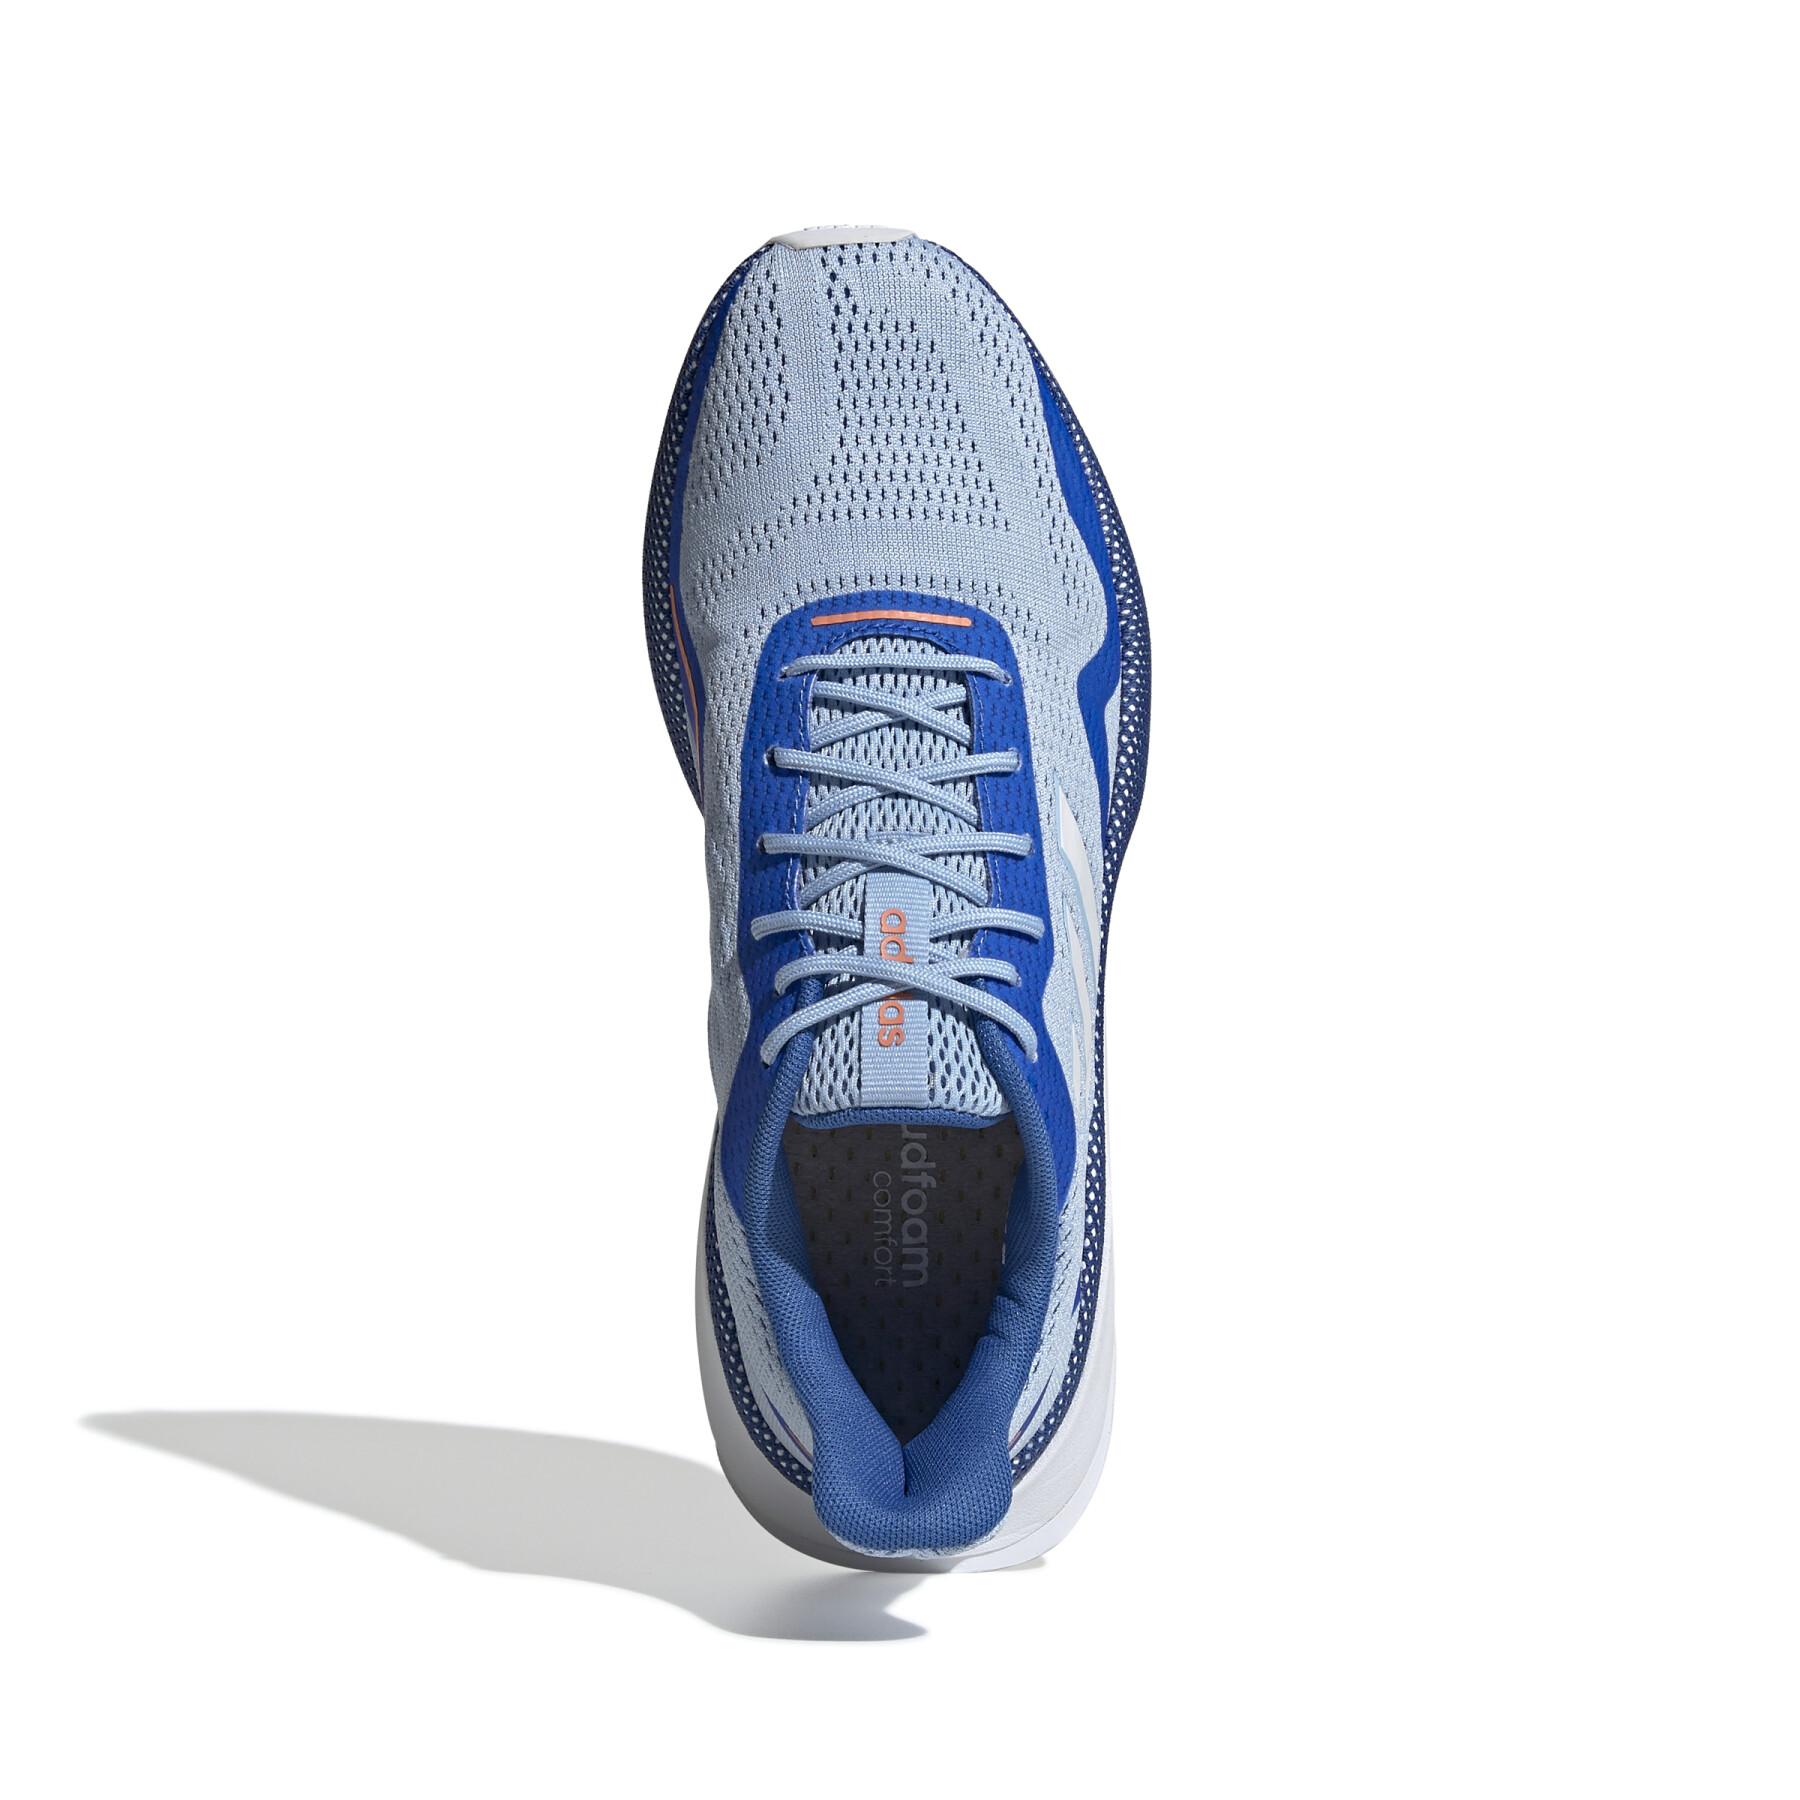 Chaussures de running femme adidas Nova Run X